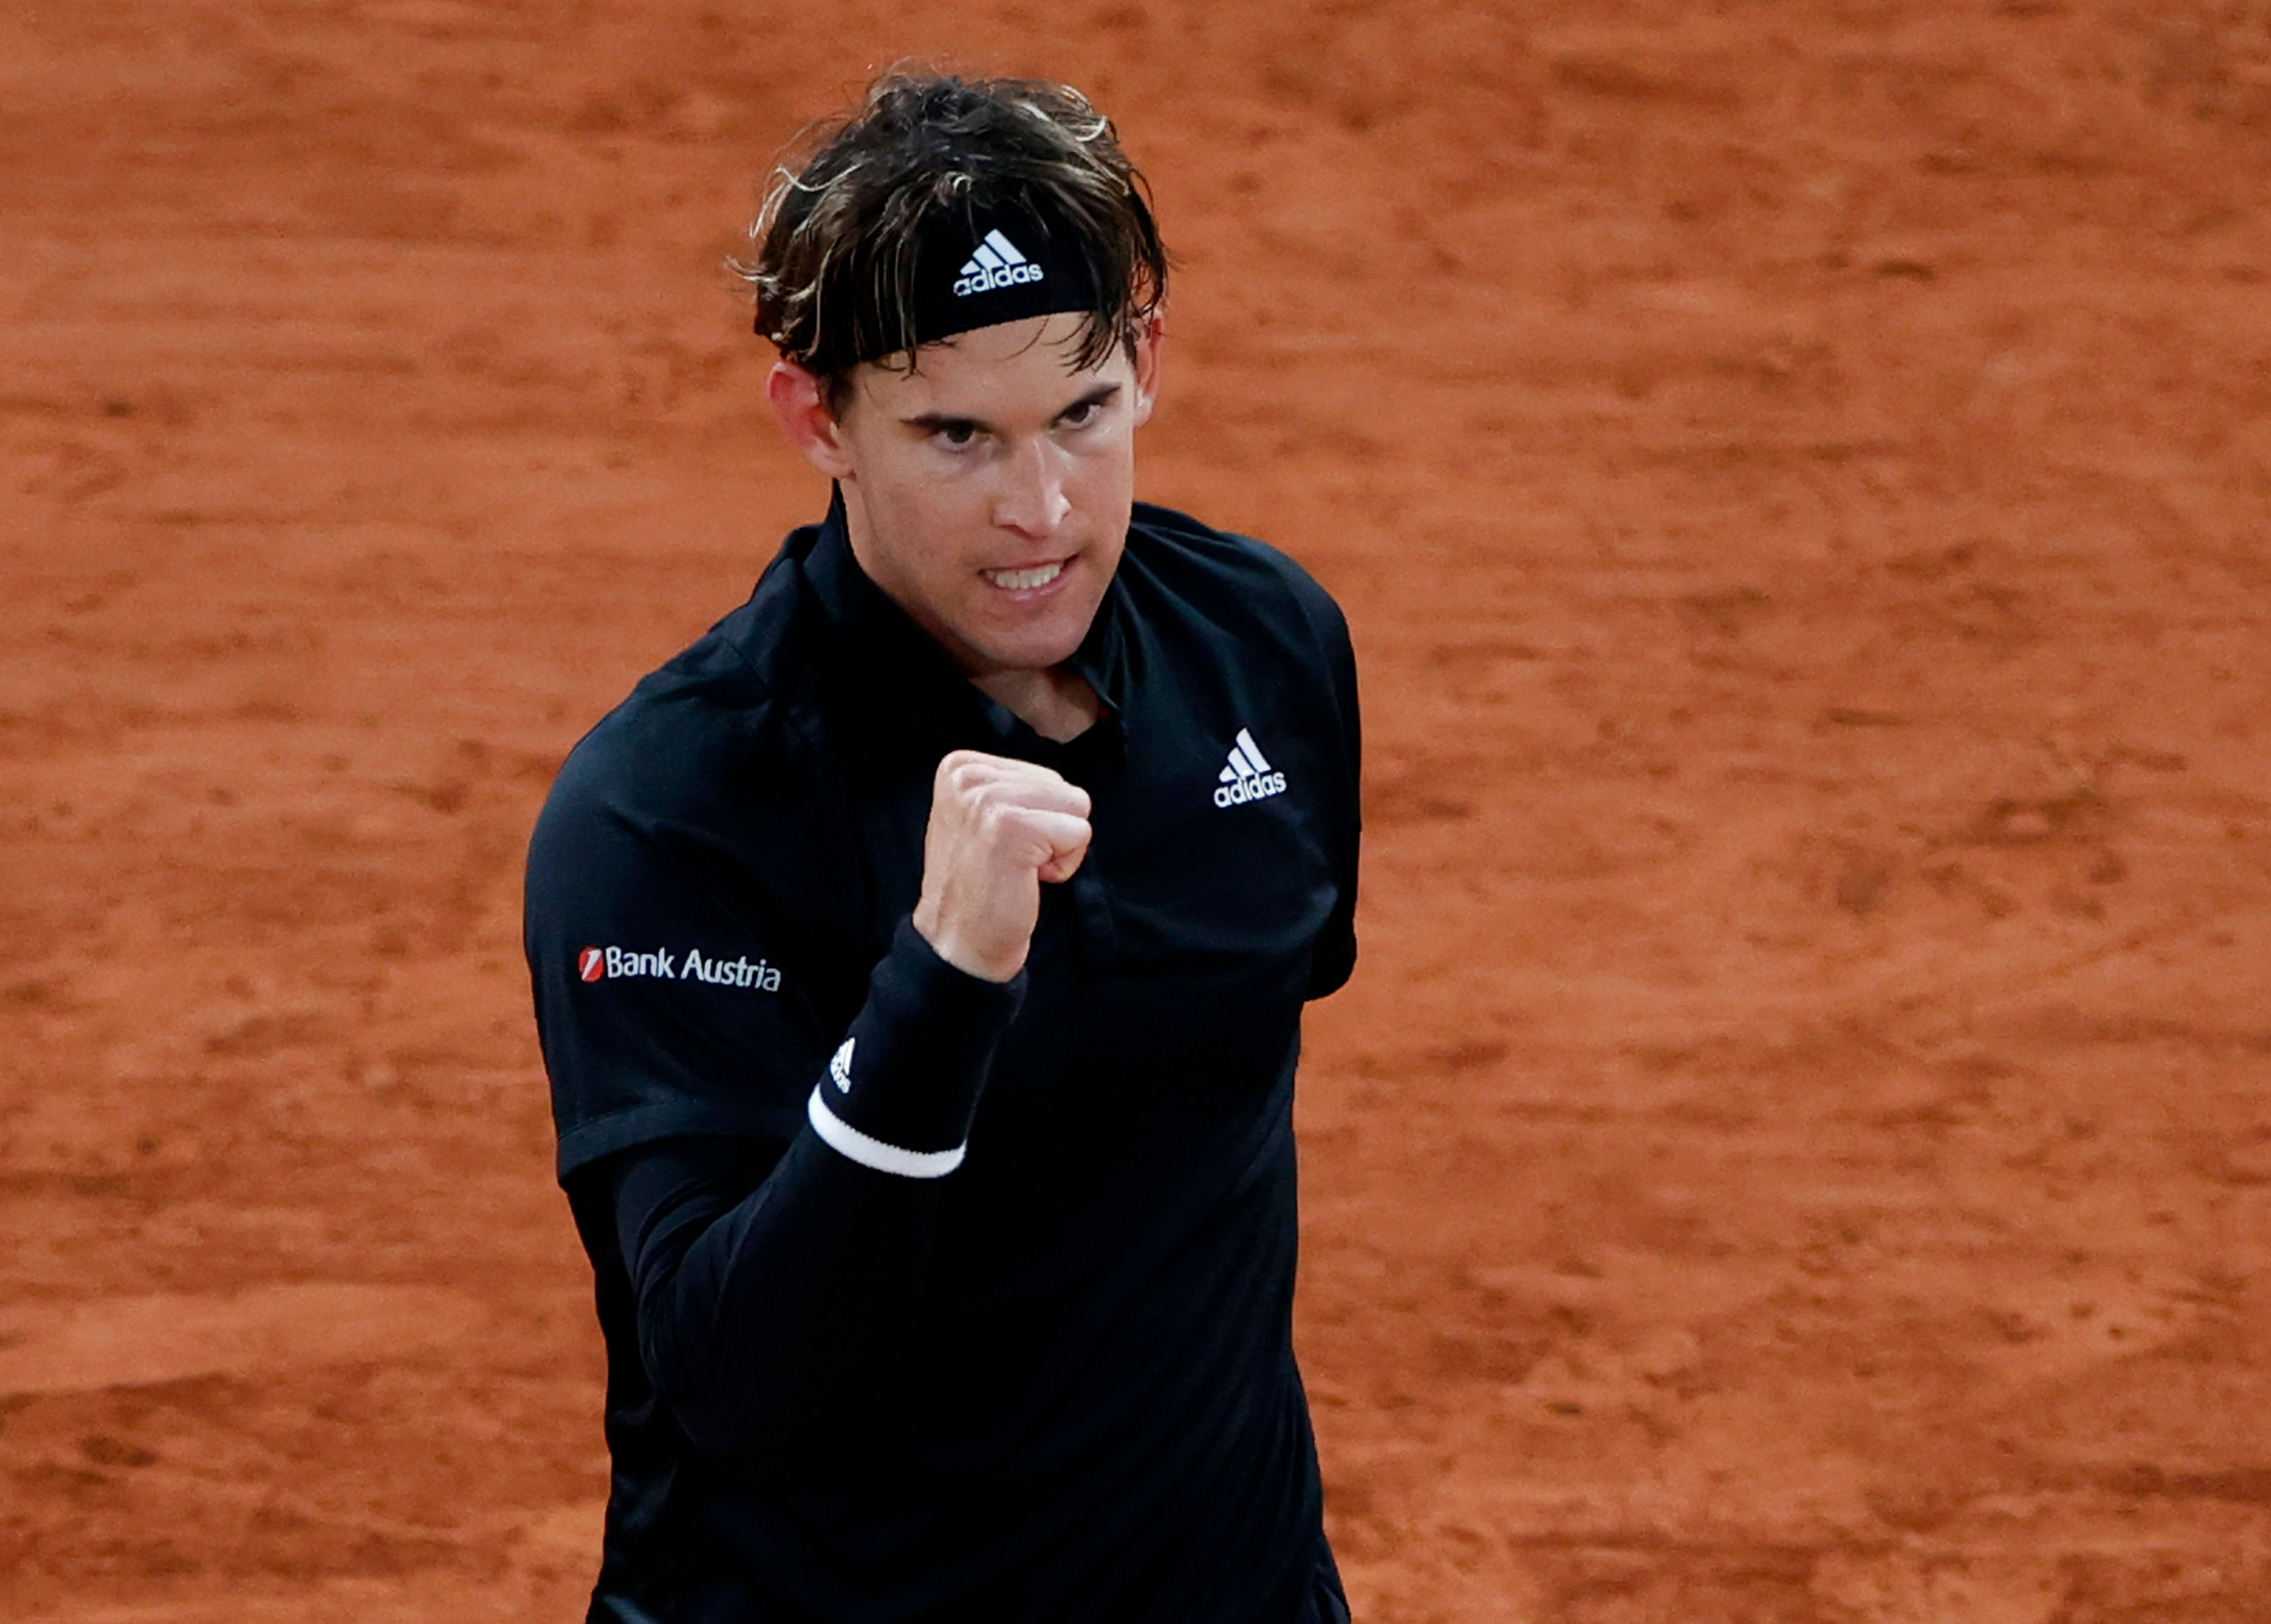 US Open champion Dominic Thiem. Credit: Reuters